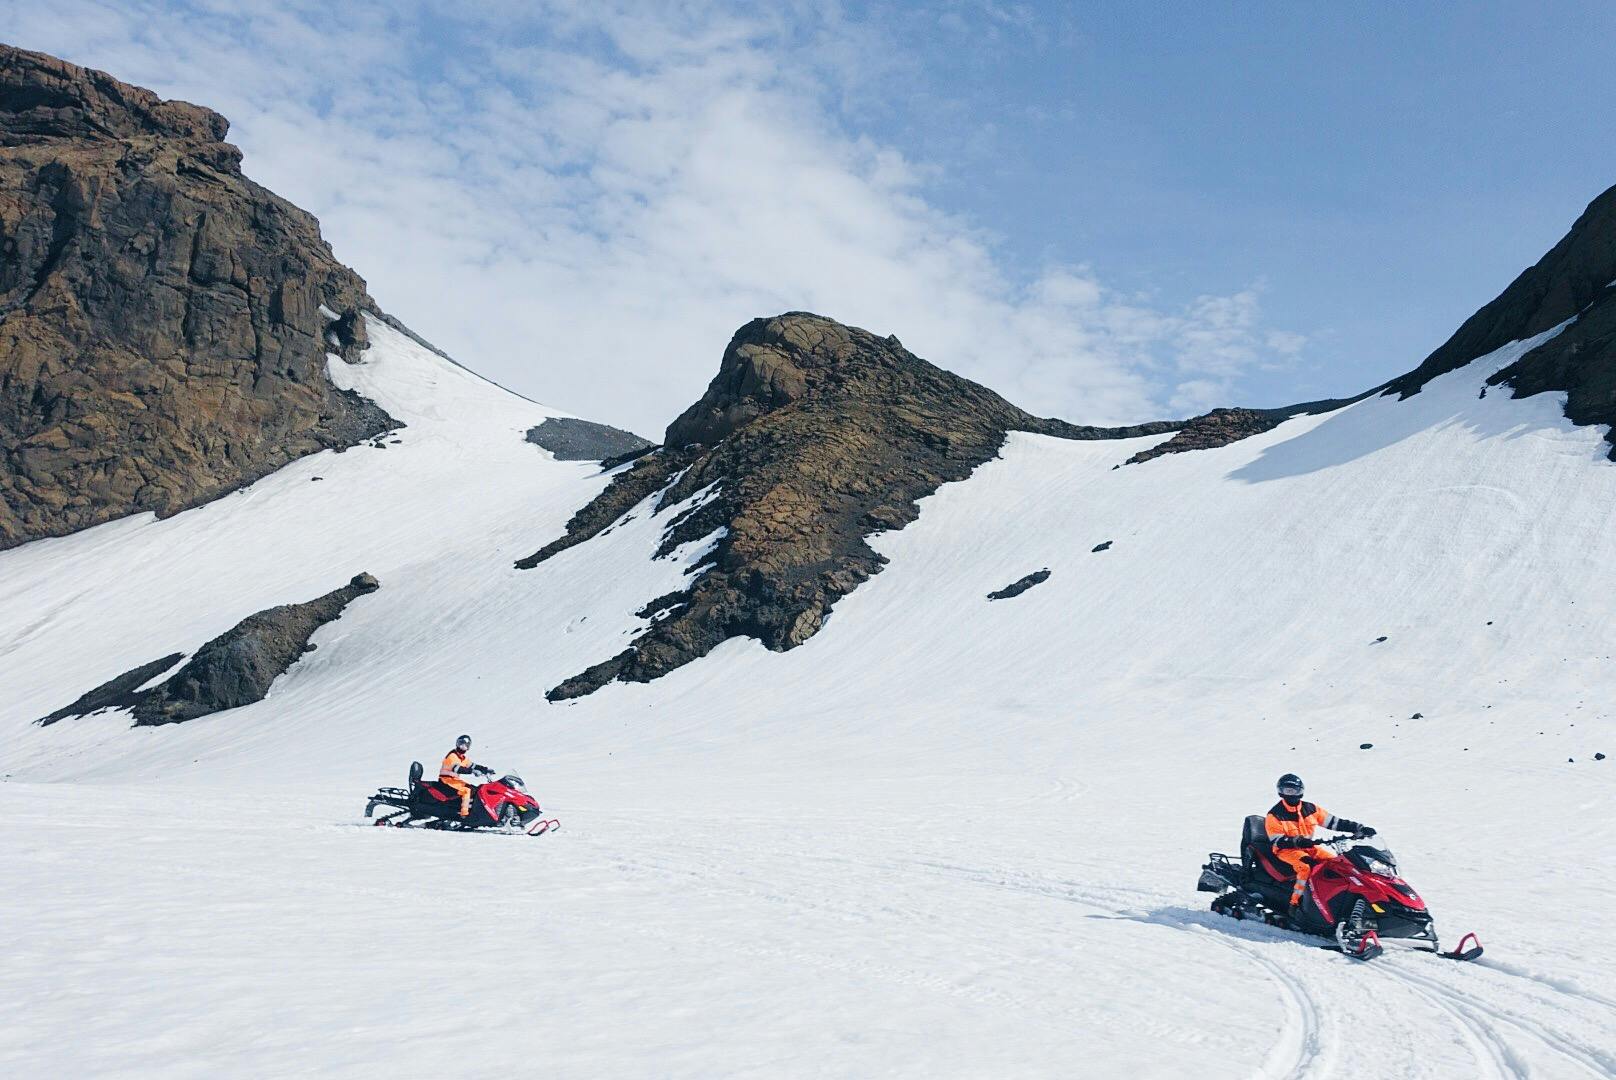 Zmaksymalizuj swoje wrażenia z lodowca jeżdżąc skuterem po ośnieżonych przestrzeniach Langjökull.